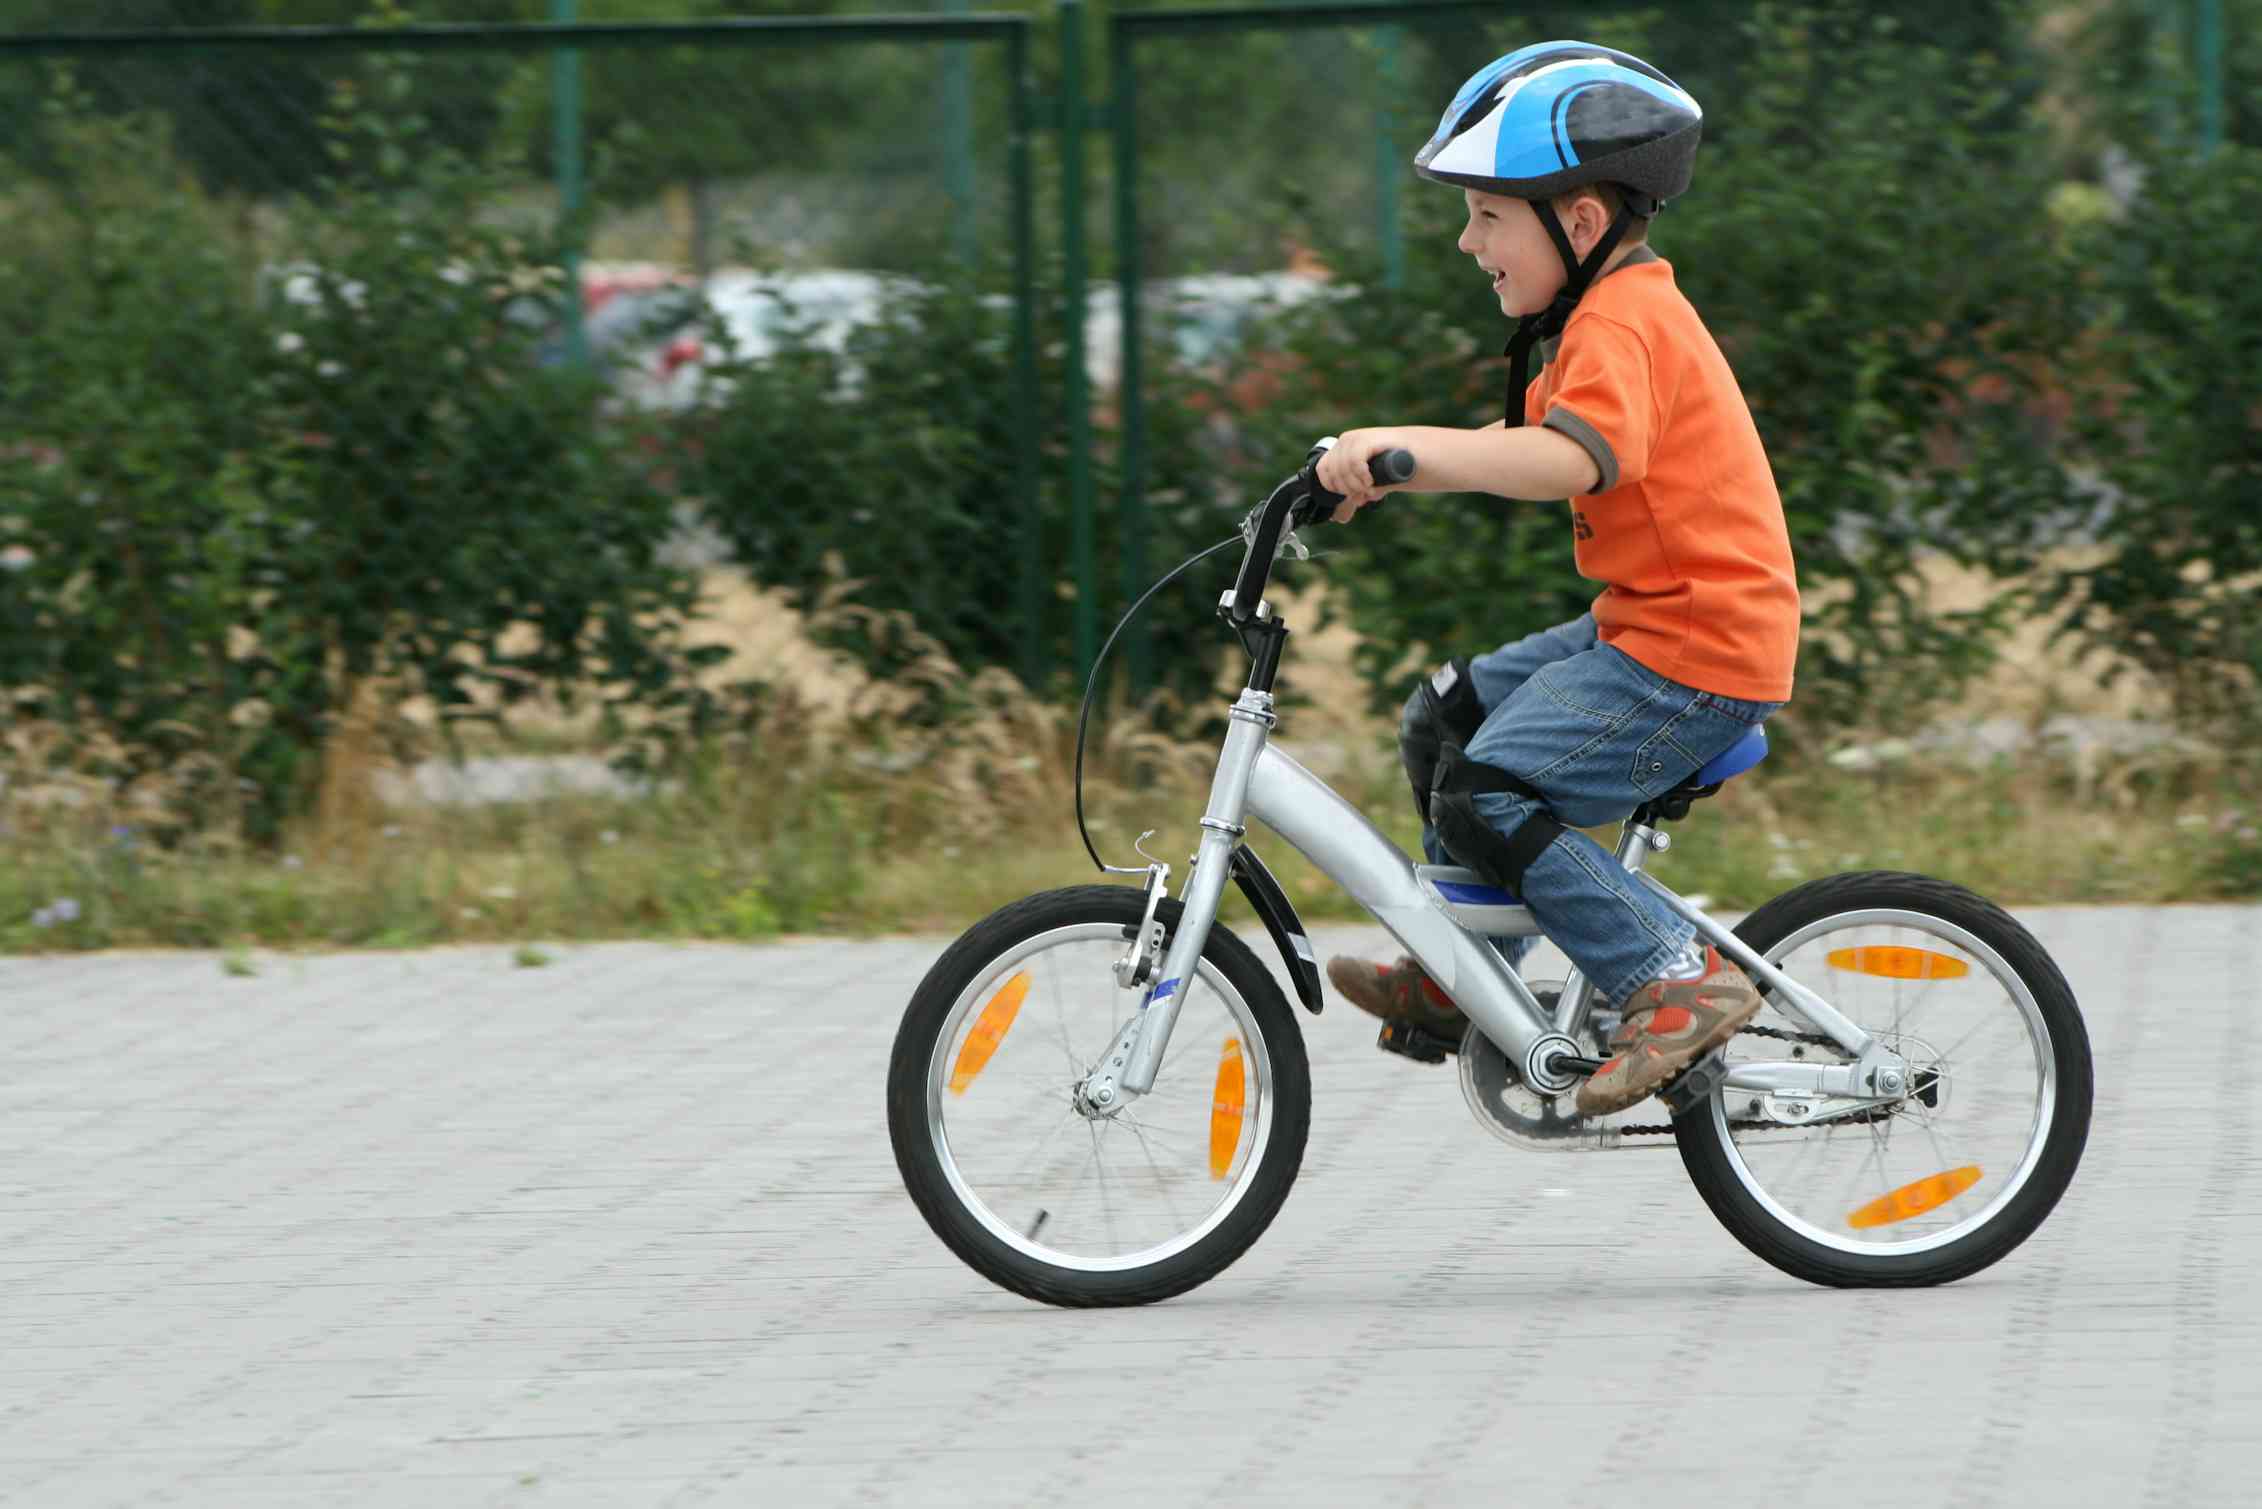 The children ride bikes. Мальчик на велосипеде. Дети с велосипедом. Мальчик катается на велосипеде. Дети катаются на велосипеде.